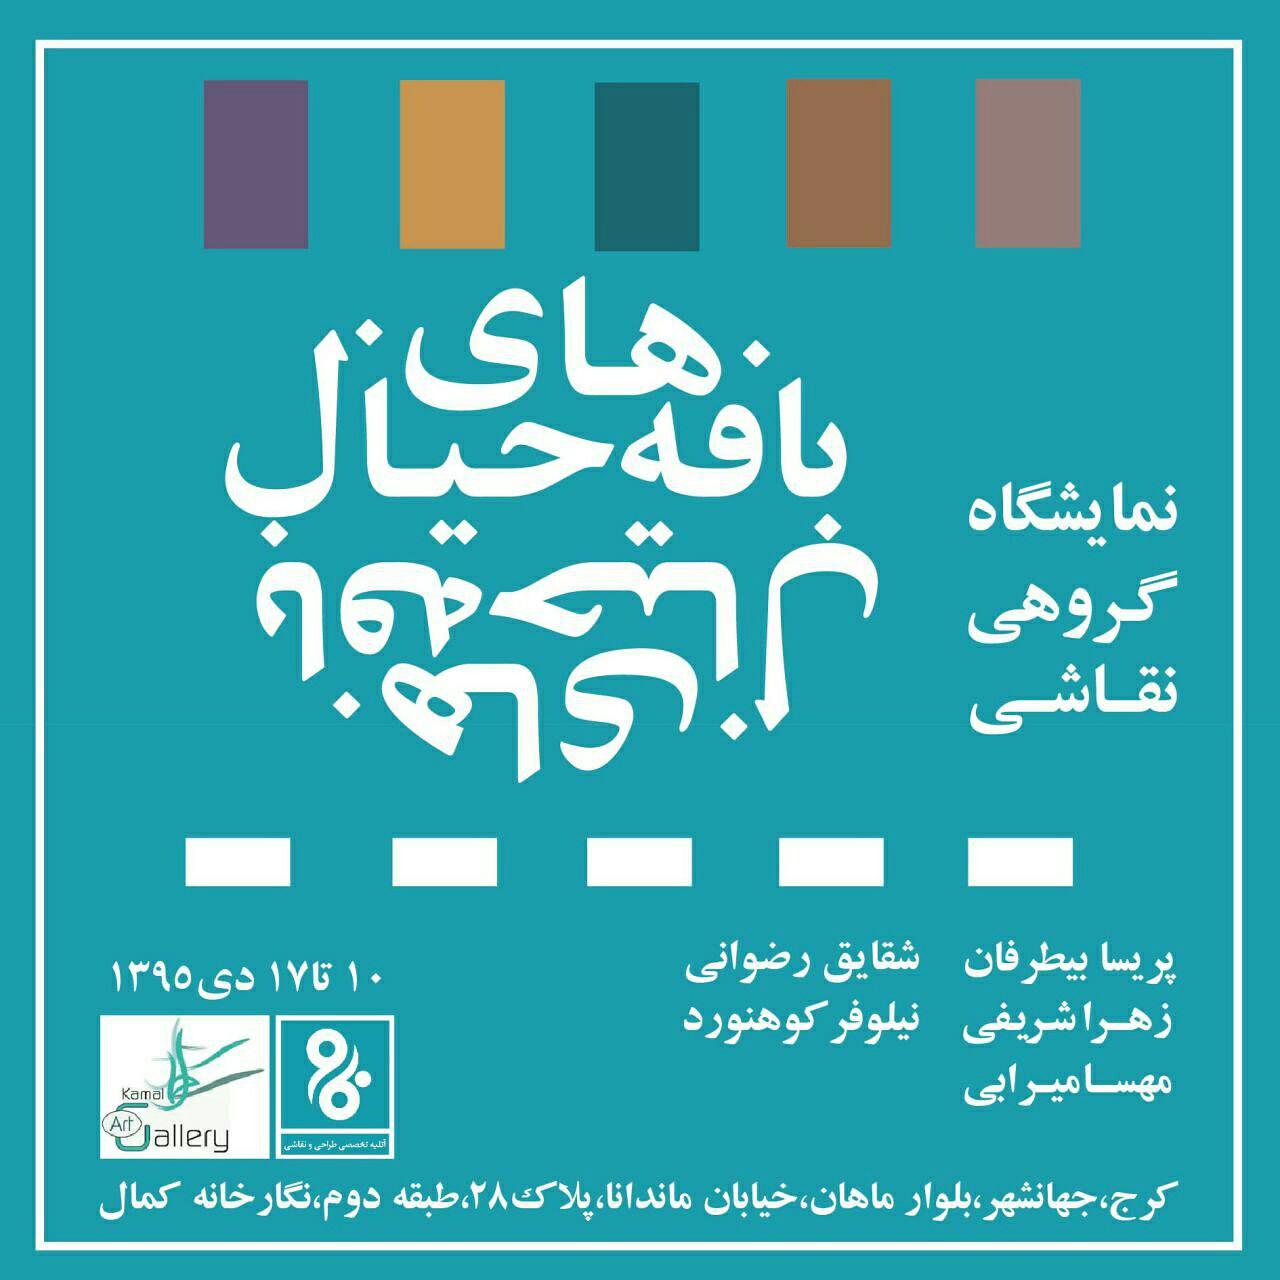 بافه های خیال در استان البرز به نمایش درآمد/گزارش تصویری